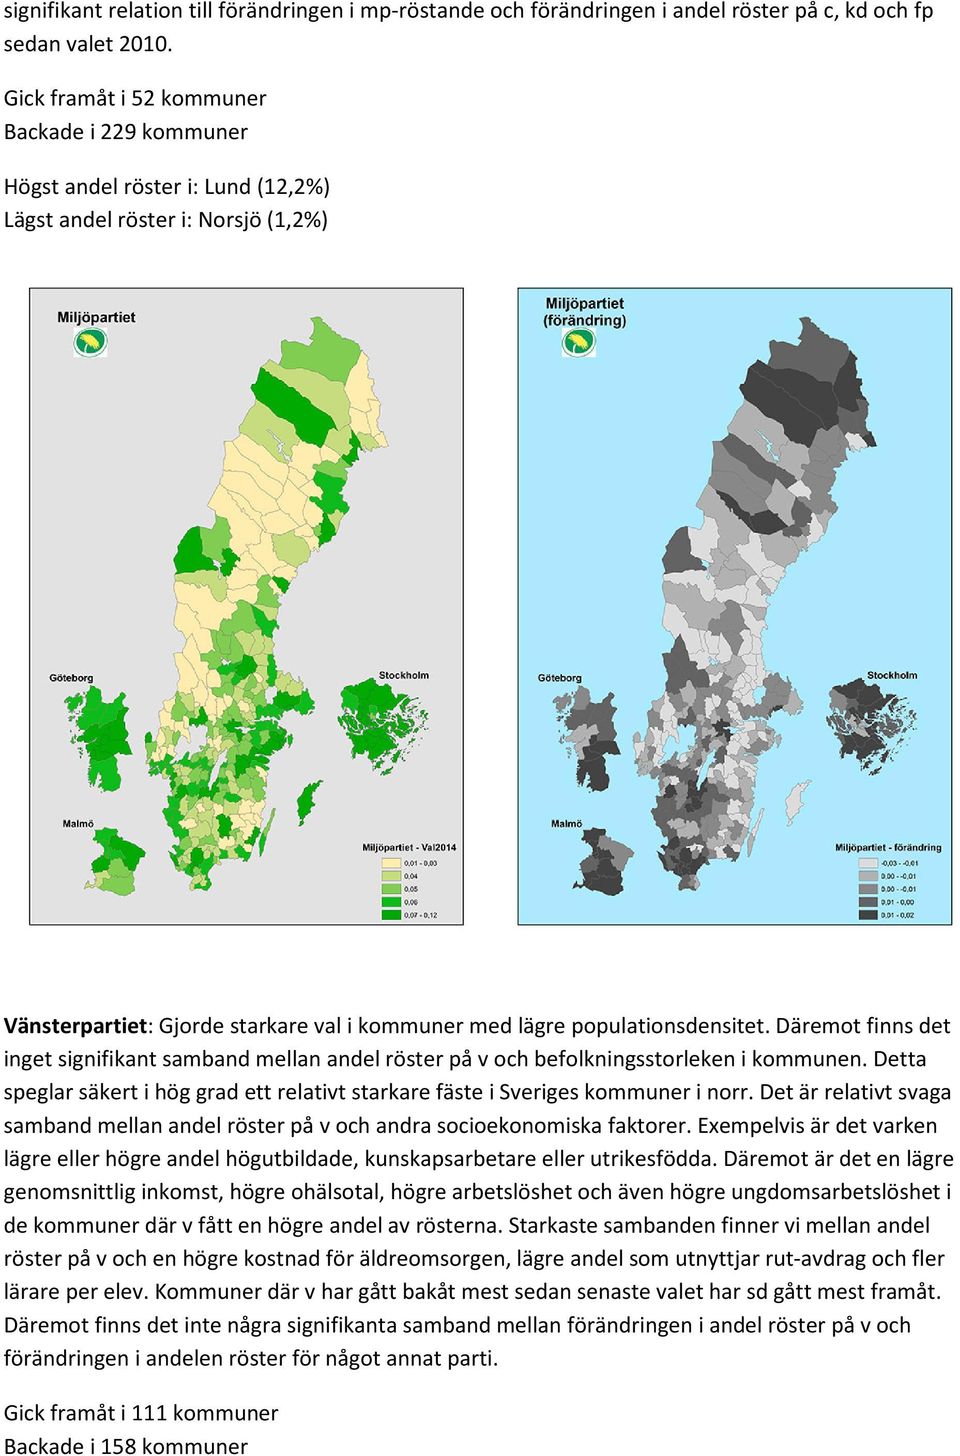 Däremot finns det inget signifikant samband mellan andel röster på v och befolkningsstorleken i kommunen. Detta speglar säkert i hög grad ett relativt starkare fäste i Sveriges kommuner i norr.